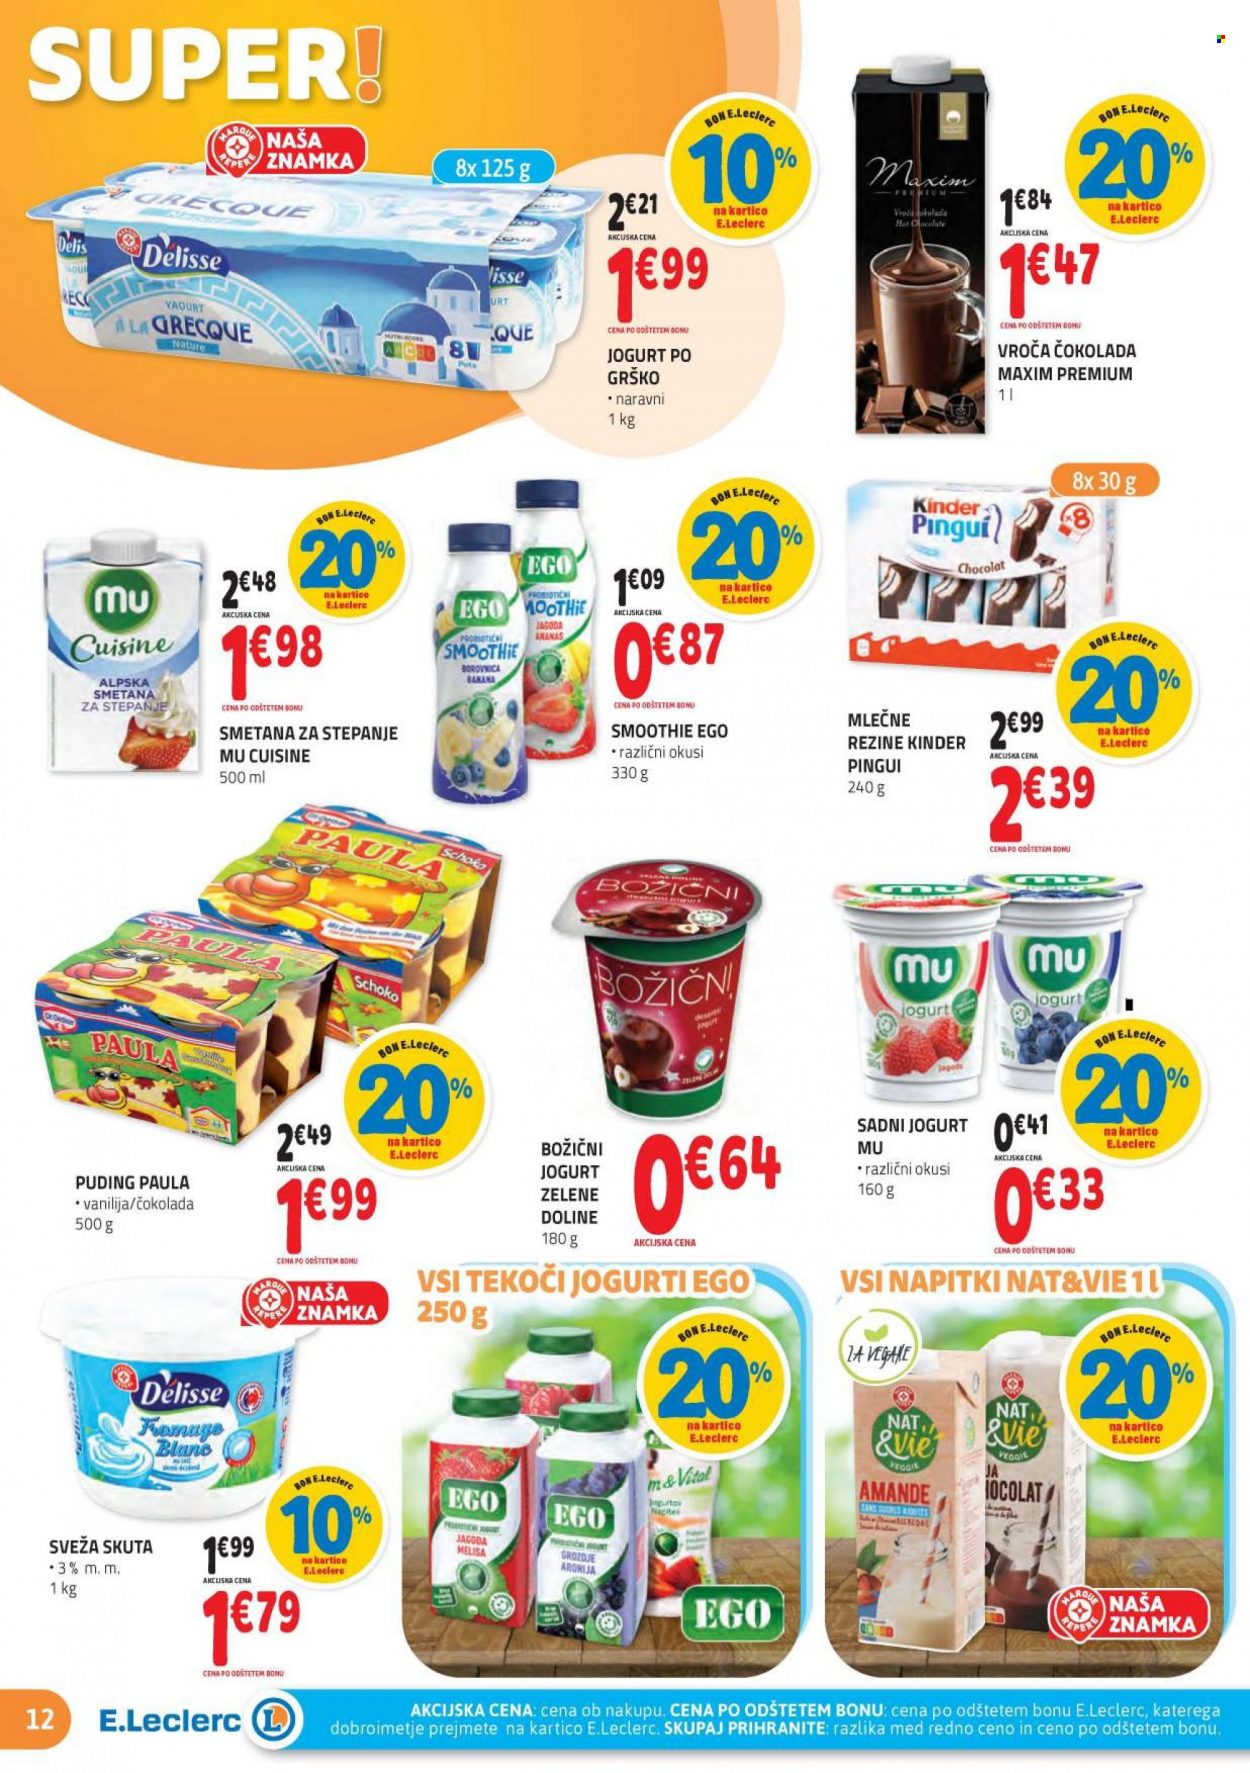 thumbnail - E.Leclerc katalog - 24.11.2021 - 4.12.2021 - Ponudba izdelkov - aronija, Veggie, grozdje, skuta, jogurt, puding, sadni jogurt, Alpska smetana, smetana za stepanje, čokolada. Stran 12.